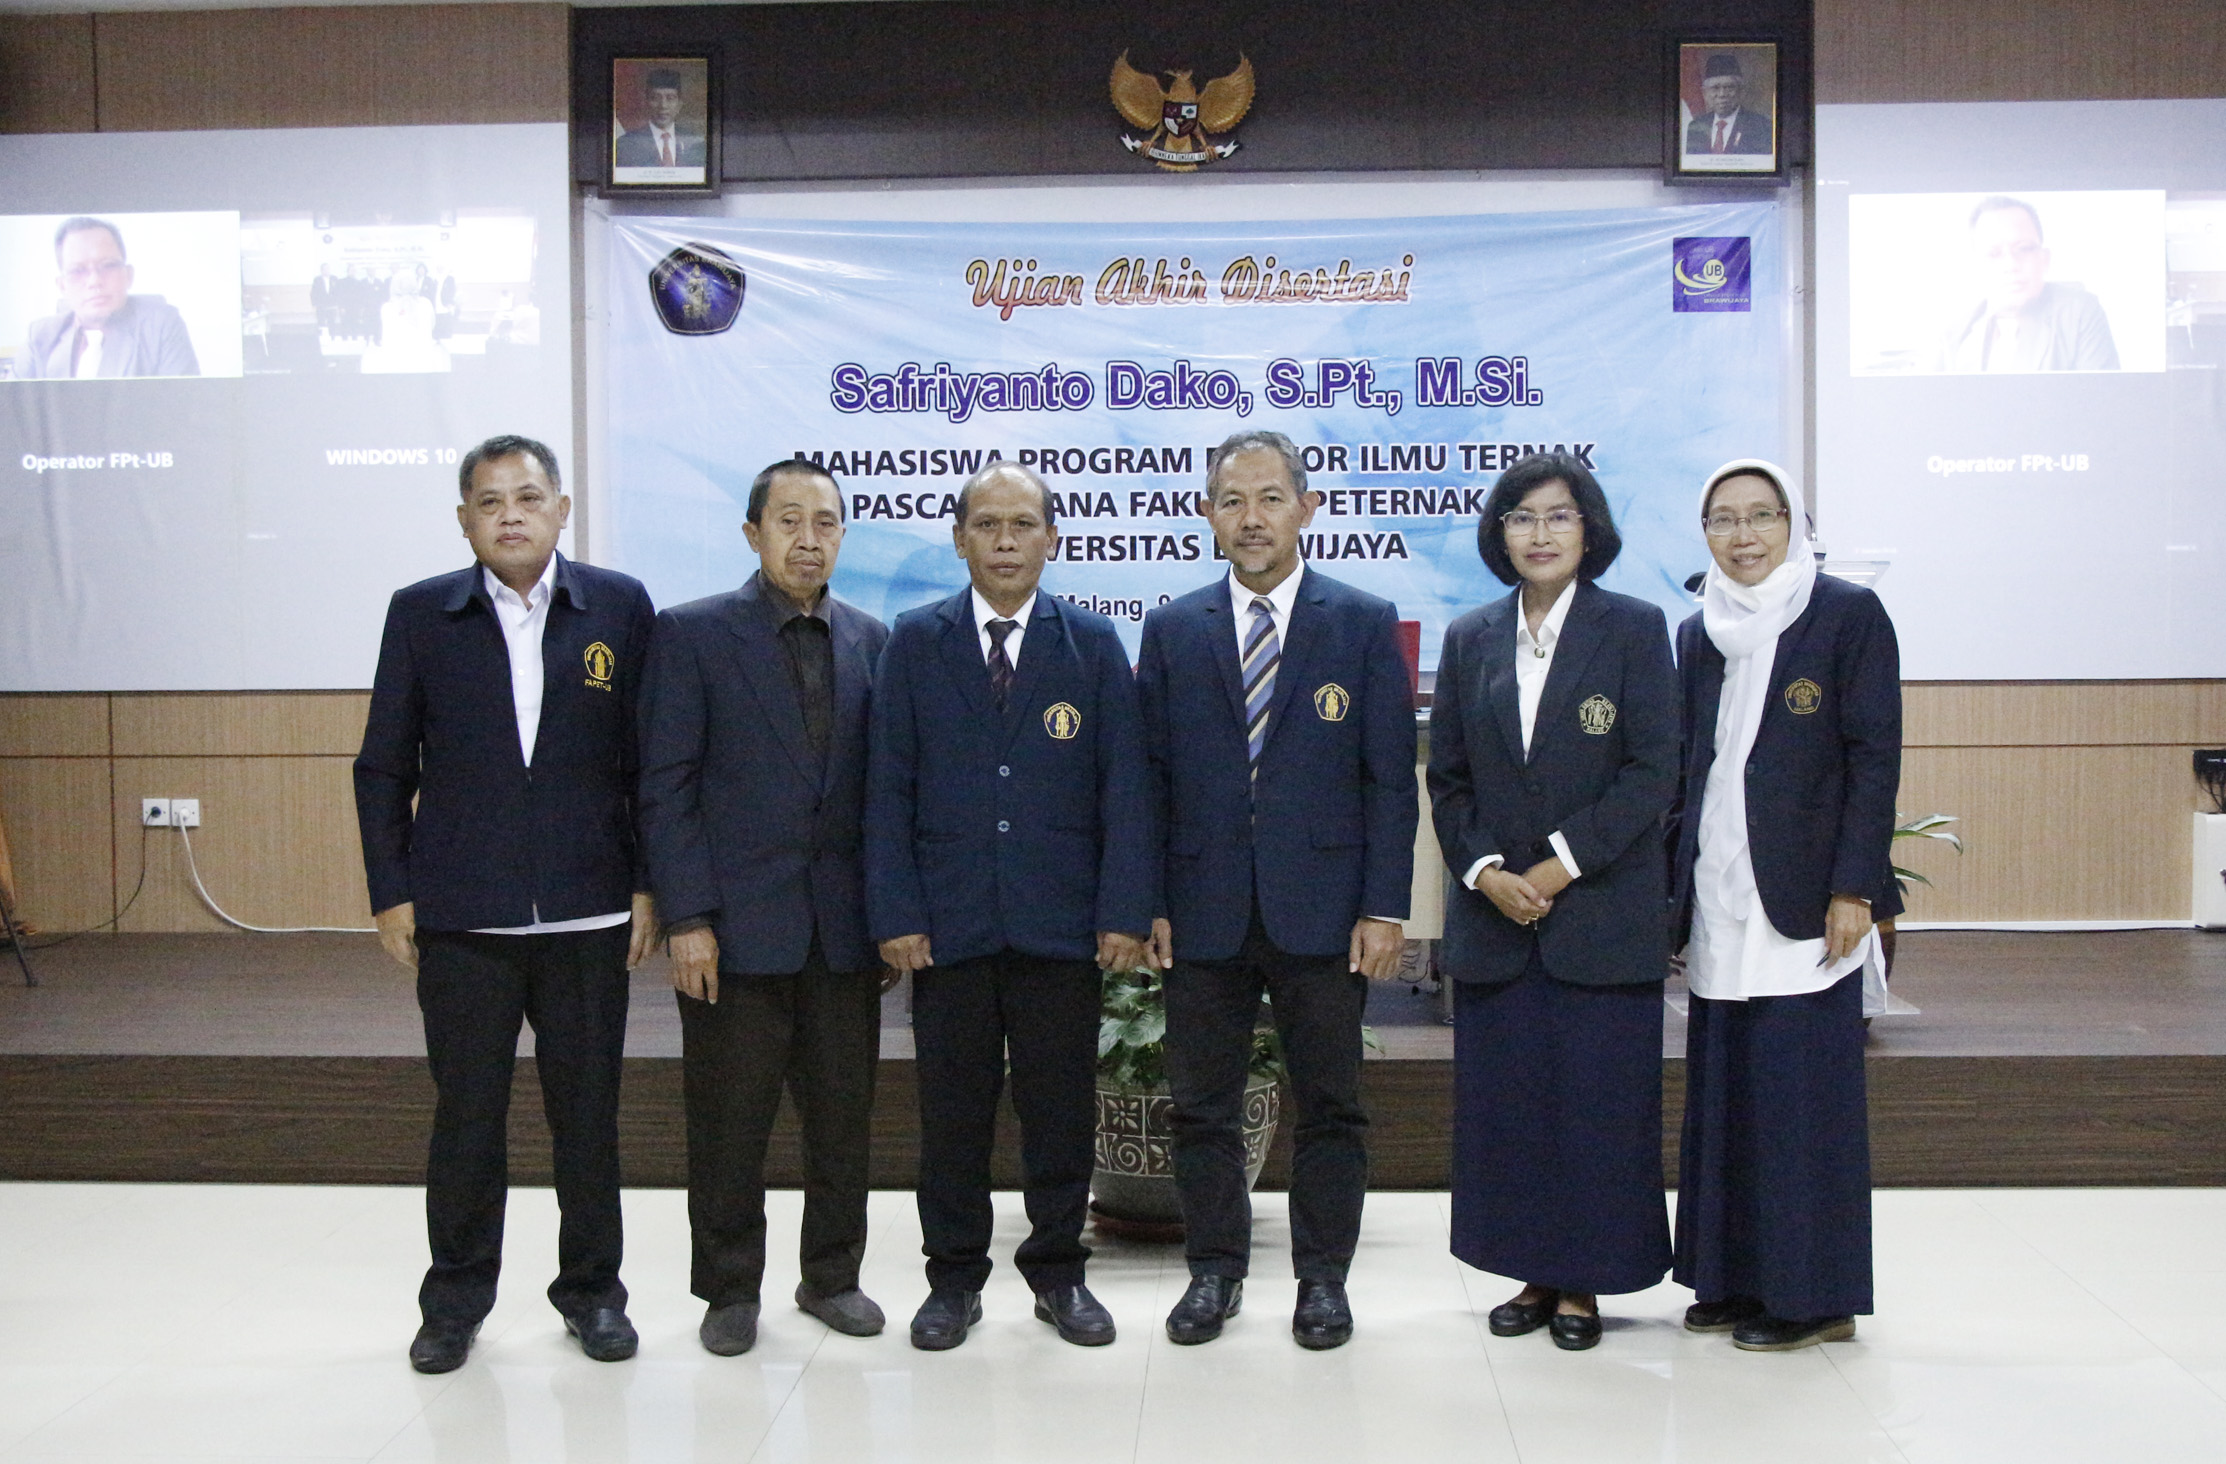 Disertasi Safriyanto Dako, S.Pt.,M.Si. : Peningkatan Mutu Genetik Sapi Lokal Gorontalo untuk Persiapkan Ketahanan Pangan Lokal